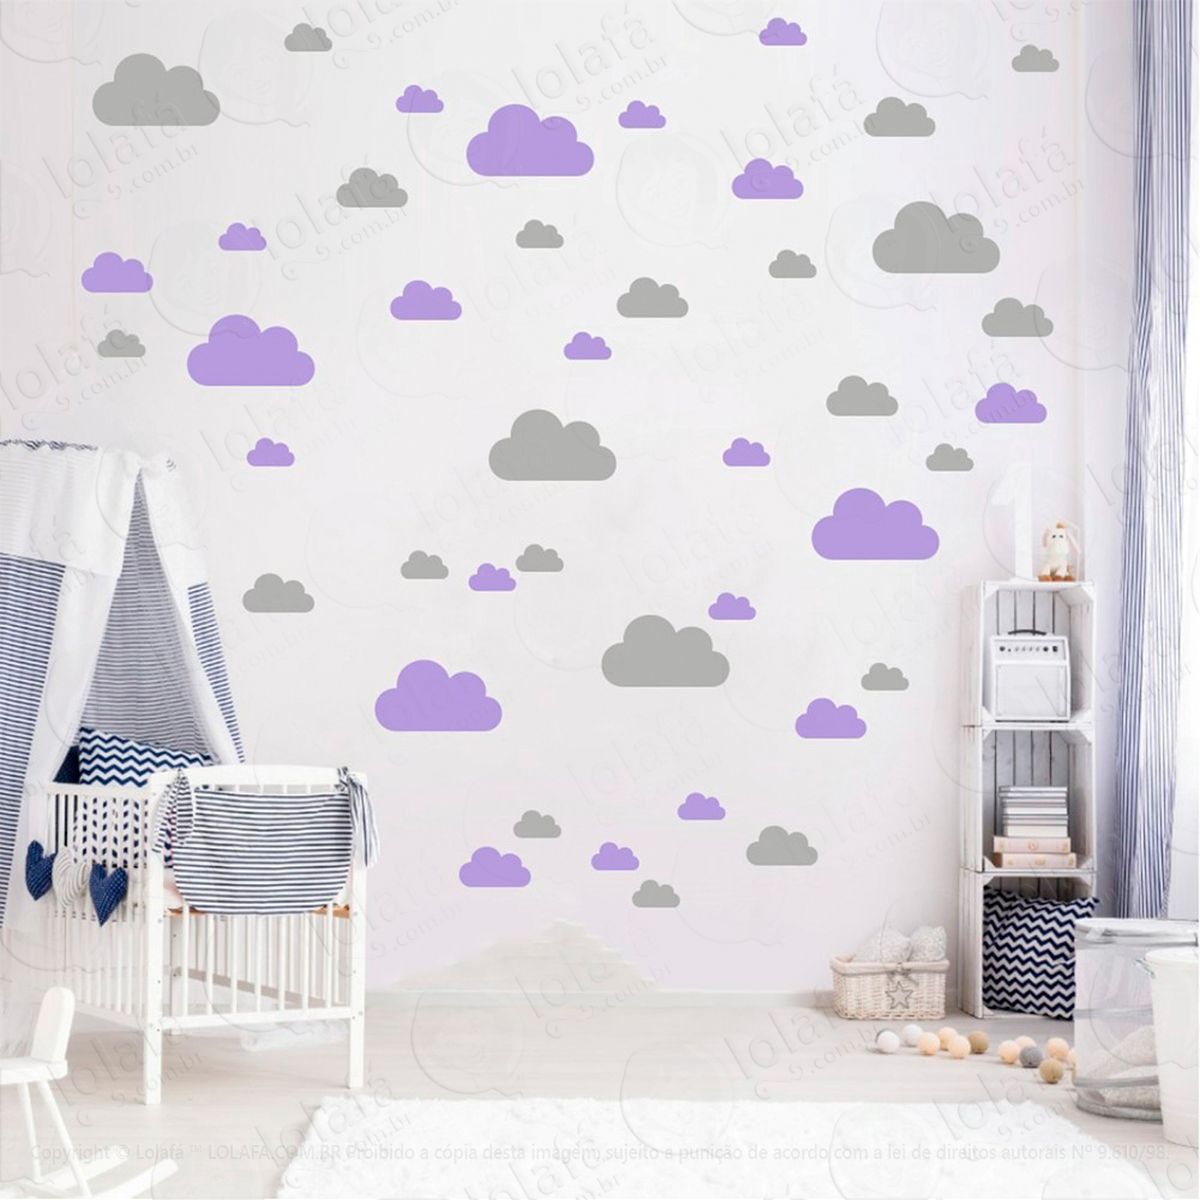 adesivos nuvens 78 peças adesivos para quarto de bebê infantil - mod:762